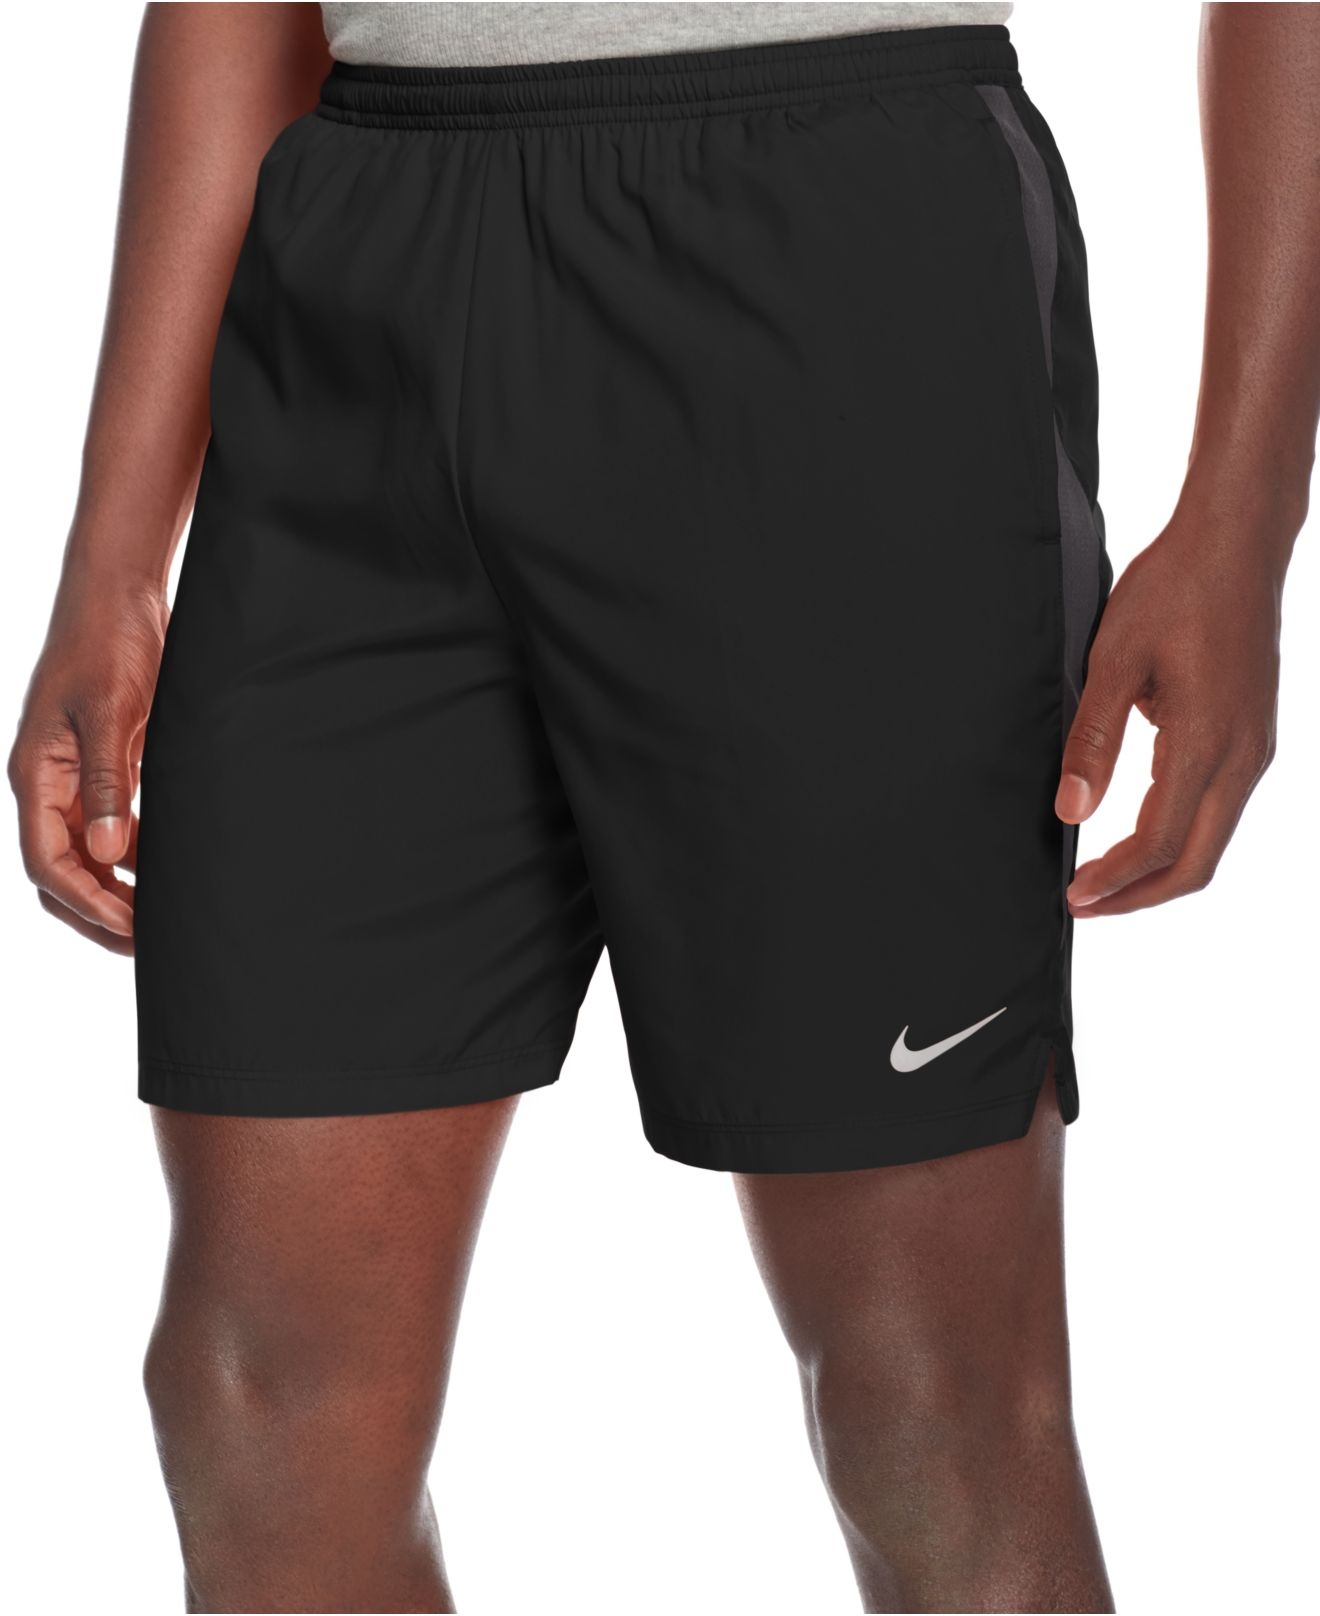 Шорты nike dri. Nike Dri Fit Standard Fit. Nike Dri-Fit Challenger. Шорты Nike Dri Fit. Шорты Nike Dri Fit черные.